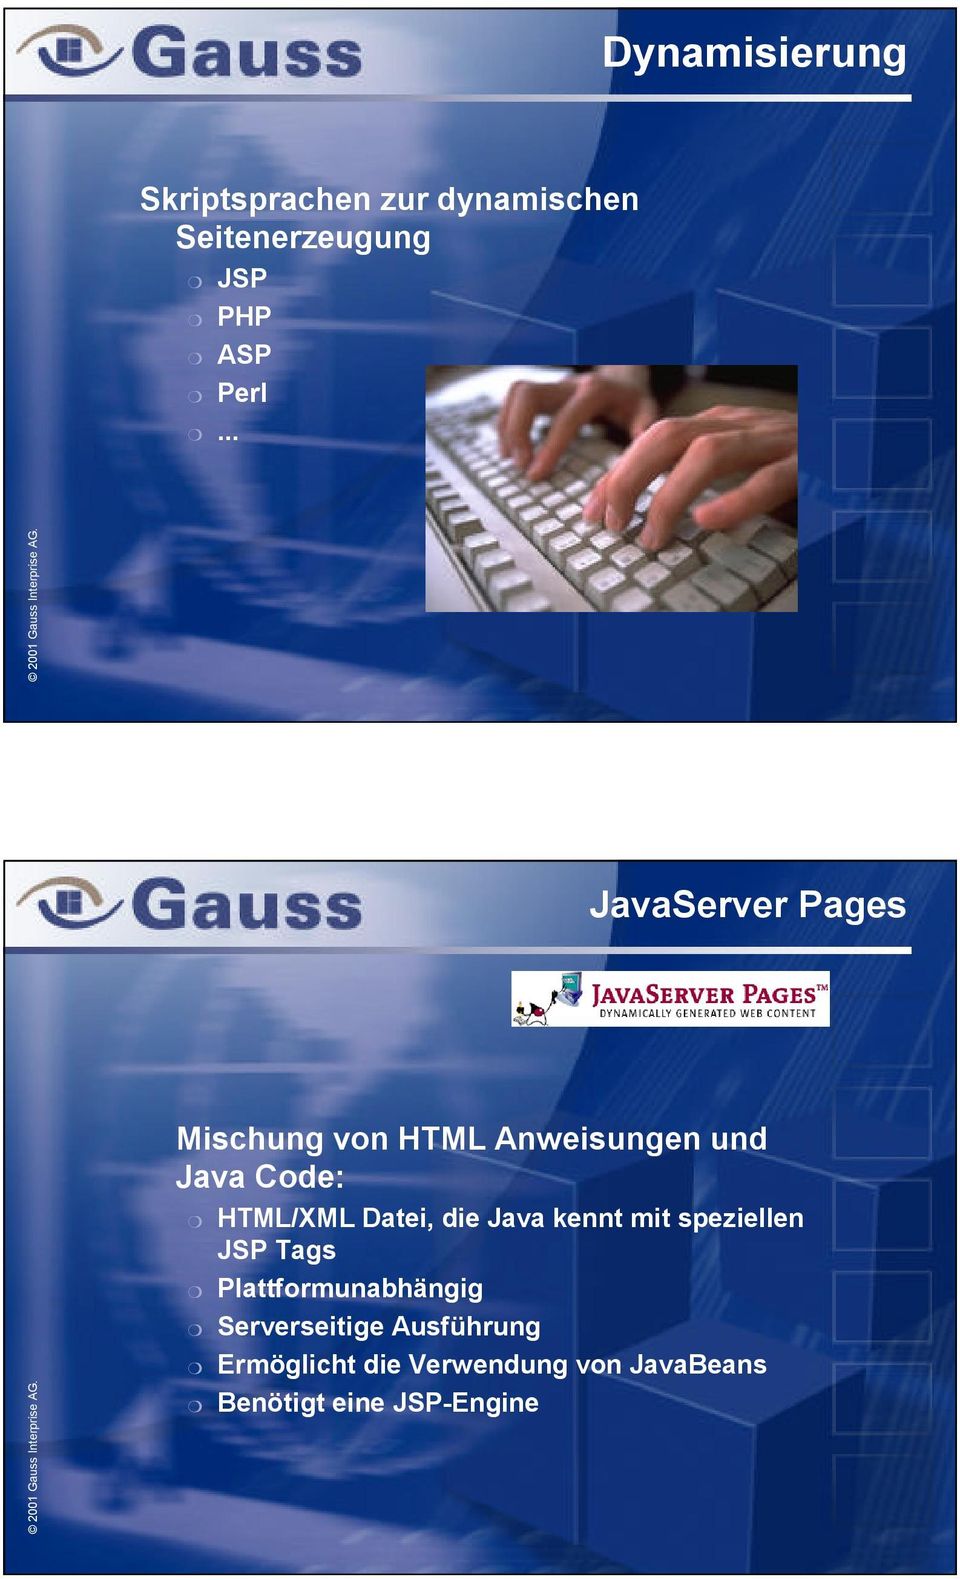 Datei, die Java kennt mit speziellen JSP Tags Plattformunabhängig